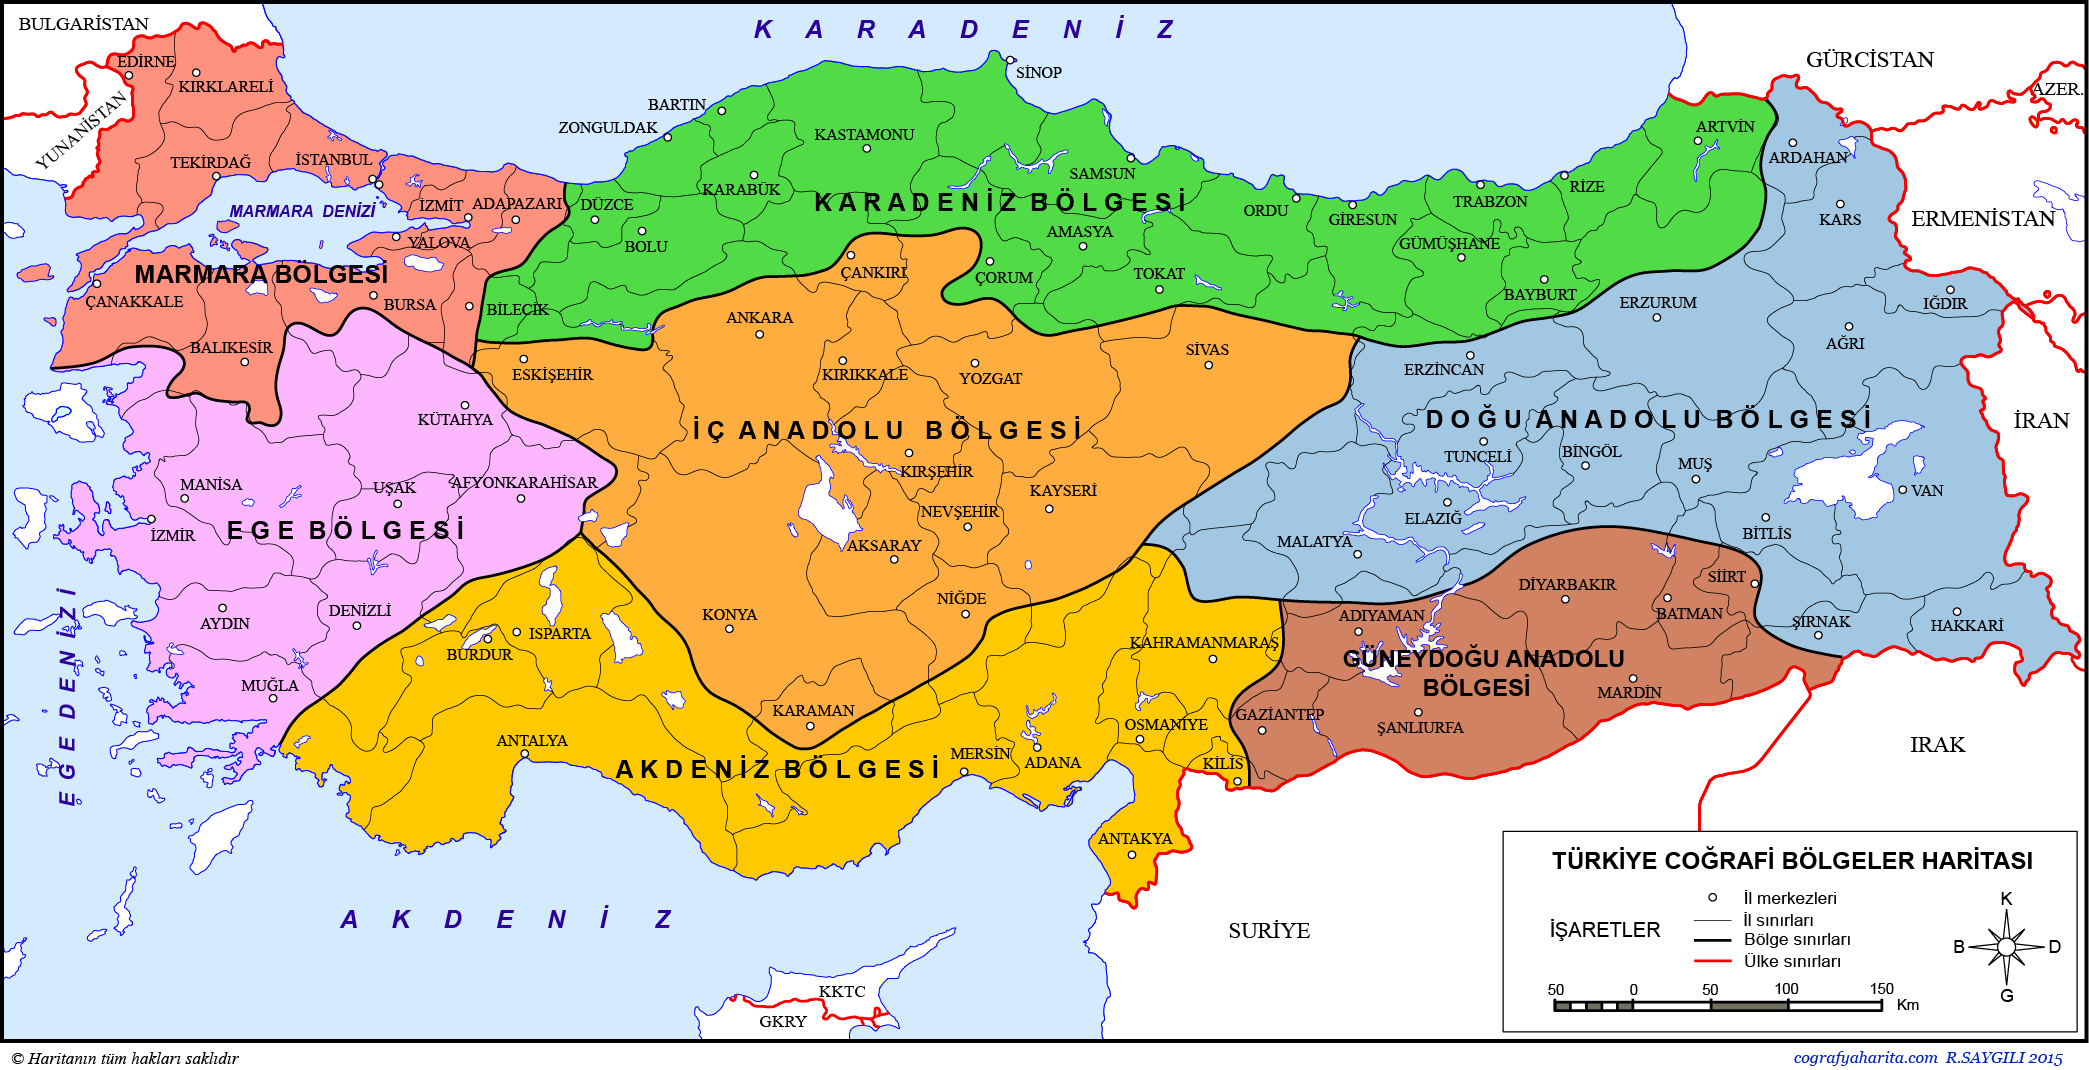  Regionen der Türkei